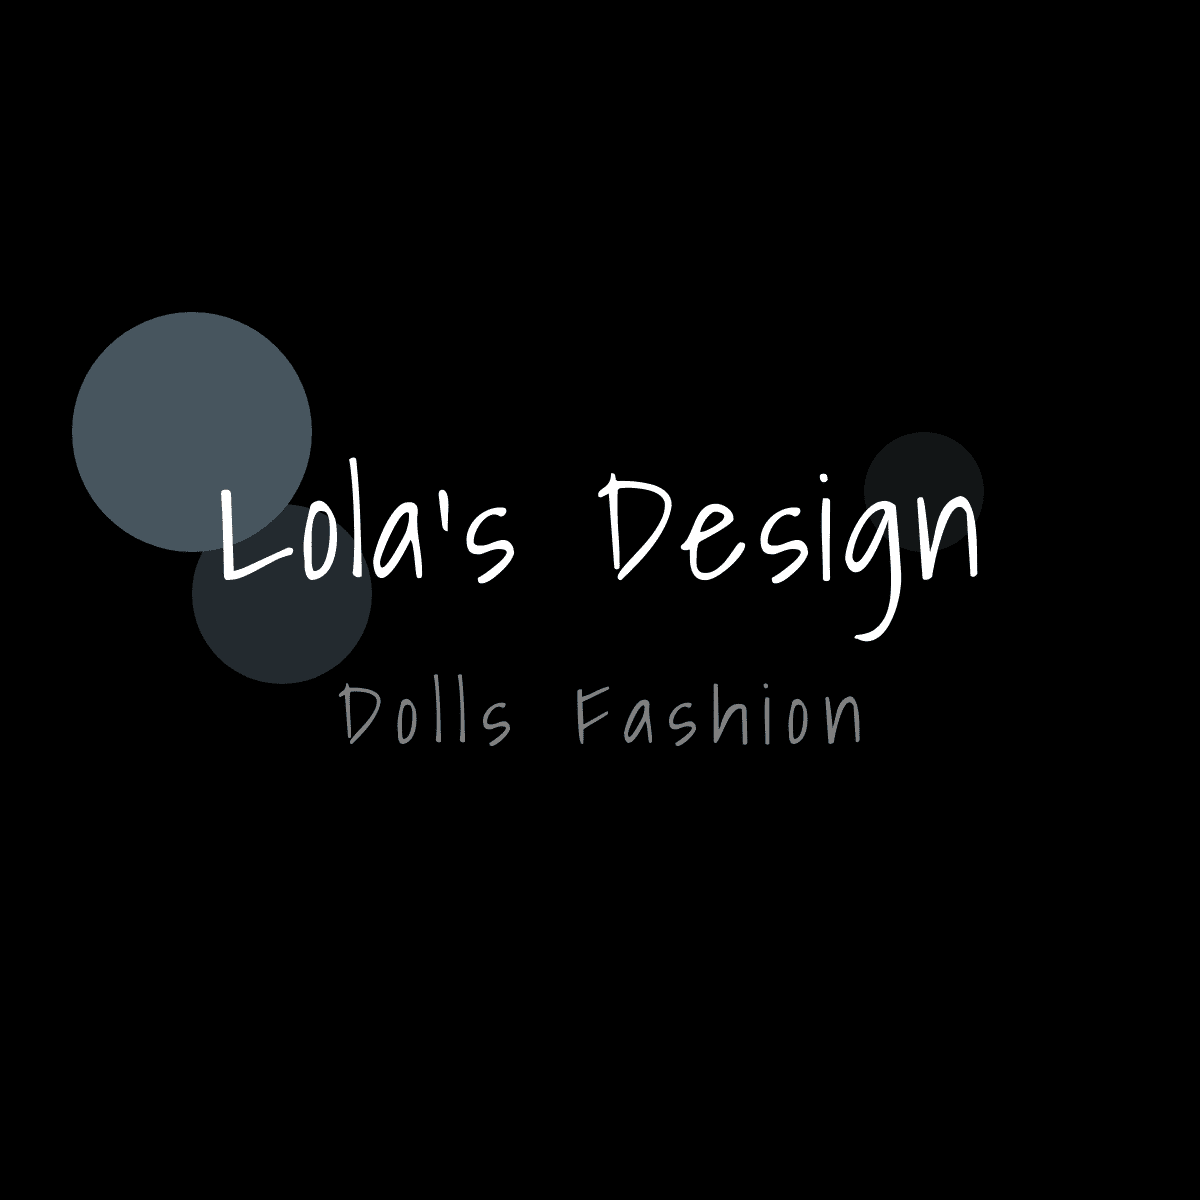 Lolas Design